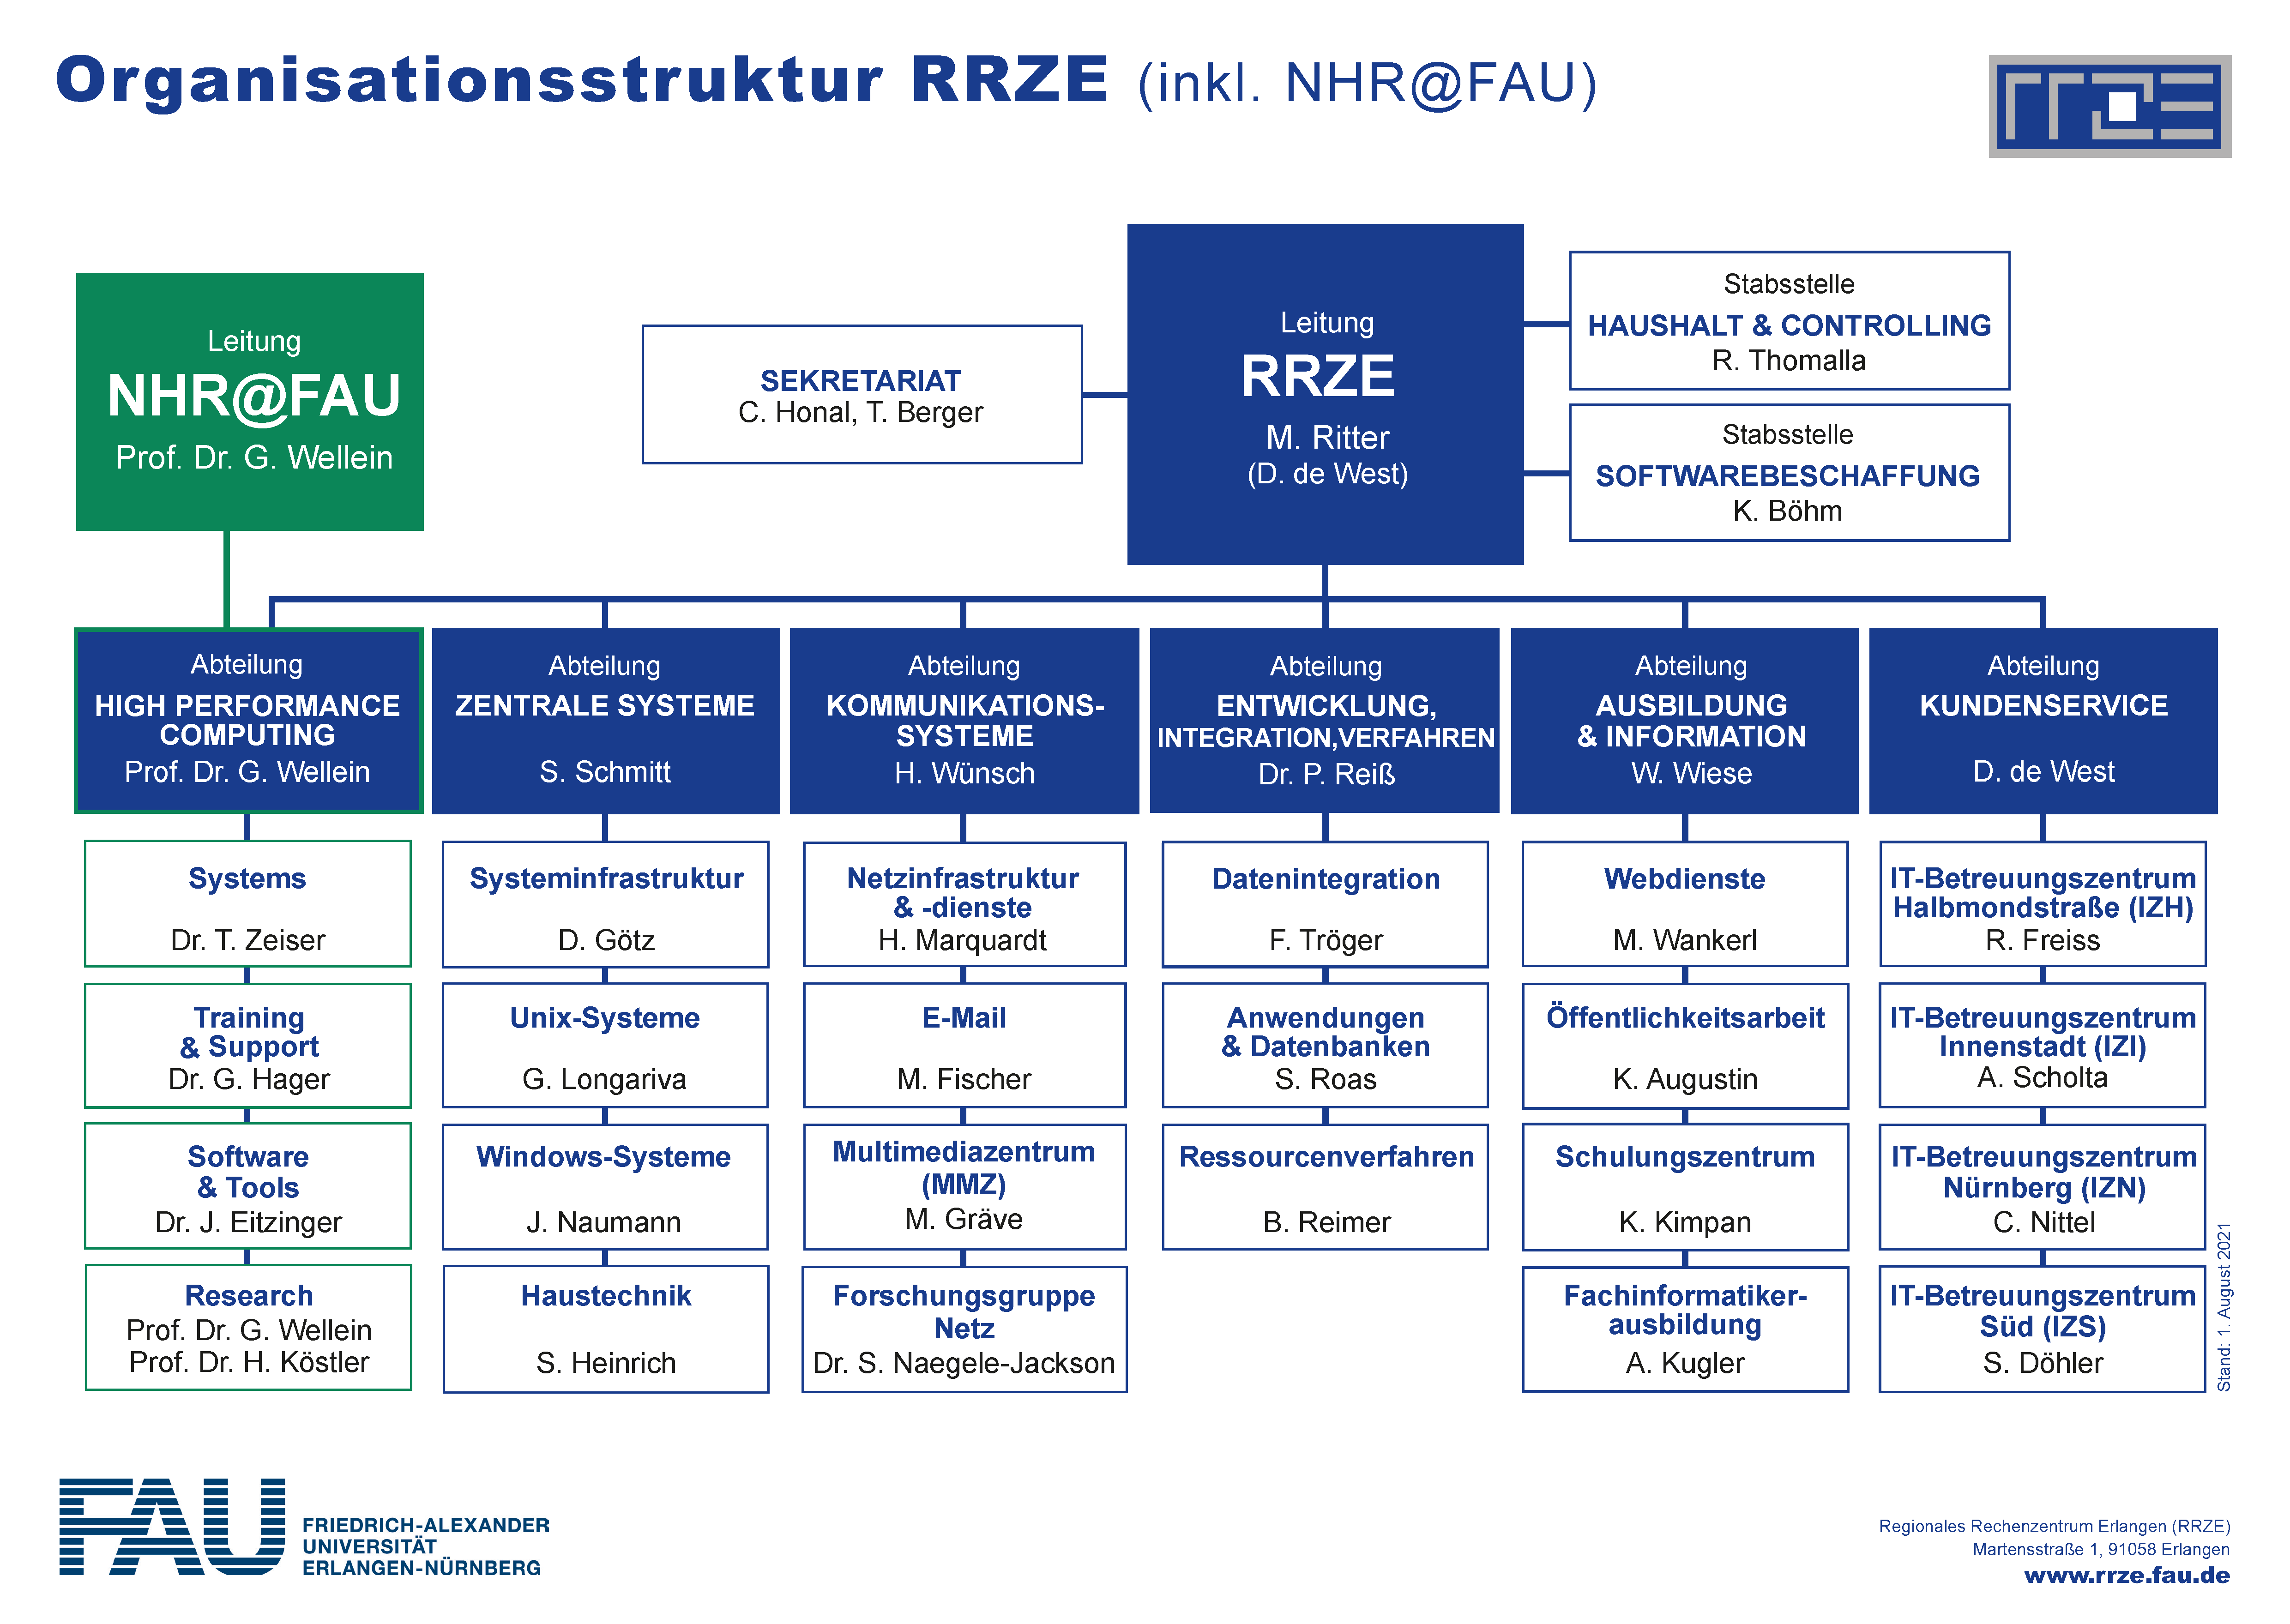 Organisationsstruktur des RRZE (inklusive Zentrum für Nationales Hochleistungsrechnen Erlangen, NHR@FAU). Zu sehen sind 6 Ebenen: Ganz oben die (farbig hervorgehobene) Leitung des RRZE (M. Ritter / D. de West) mit den Stabsstellen „Haushalt & Controlling“ (R. Thomalla) und der Stabsstelle „Softwarebeschaffung“ (K. Böhm). Ebenfalls an der Spitze des Organigramms zu sehen (sowie ebenfalls farbig hervorgehoben): NHR@FAU (Prof. Dr. G. Wellein). Die fünf Ebenen darunter teilen sich auf in die verschiedenen Abteilungen. Sie können unter https://www.rrze.fau.de/infocenter/wir-ueber-uns/struktur/abteilungen/ noch einmal genauer angesehen werden. Dort sind auch die jeweiligen Mitarbeitenden aufgeführt. Die Gesamtstruktur des RRZE mitsamt der Leitungsebene wird am besten auf der Seite https://www.rrze.fau.de/infocenter/wir-ueber-uns/struktur/ unter den jeweiligen Menüpunkten deutlich.